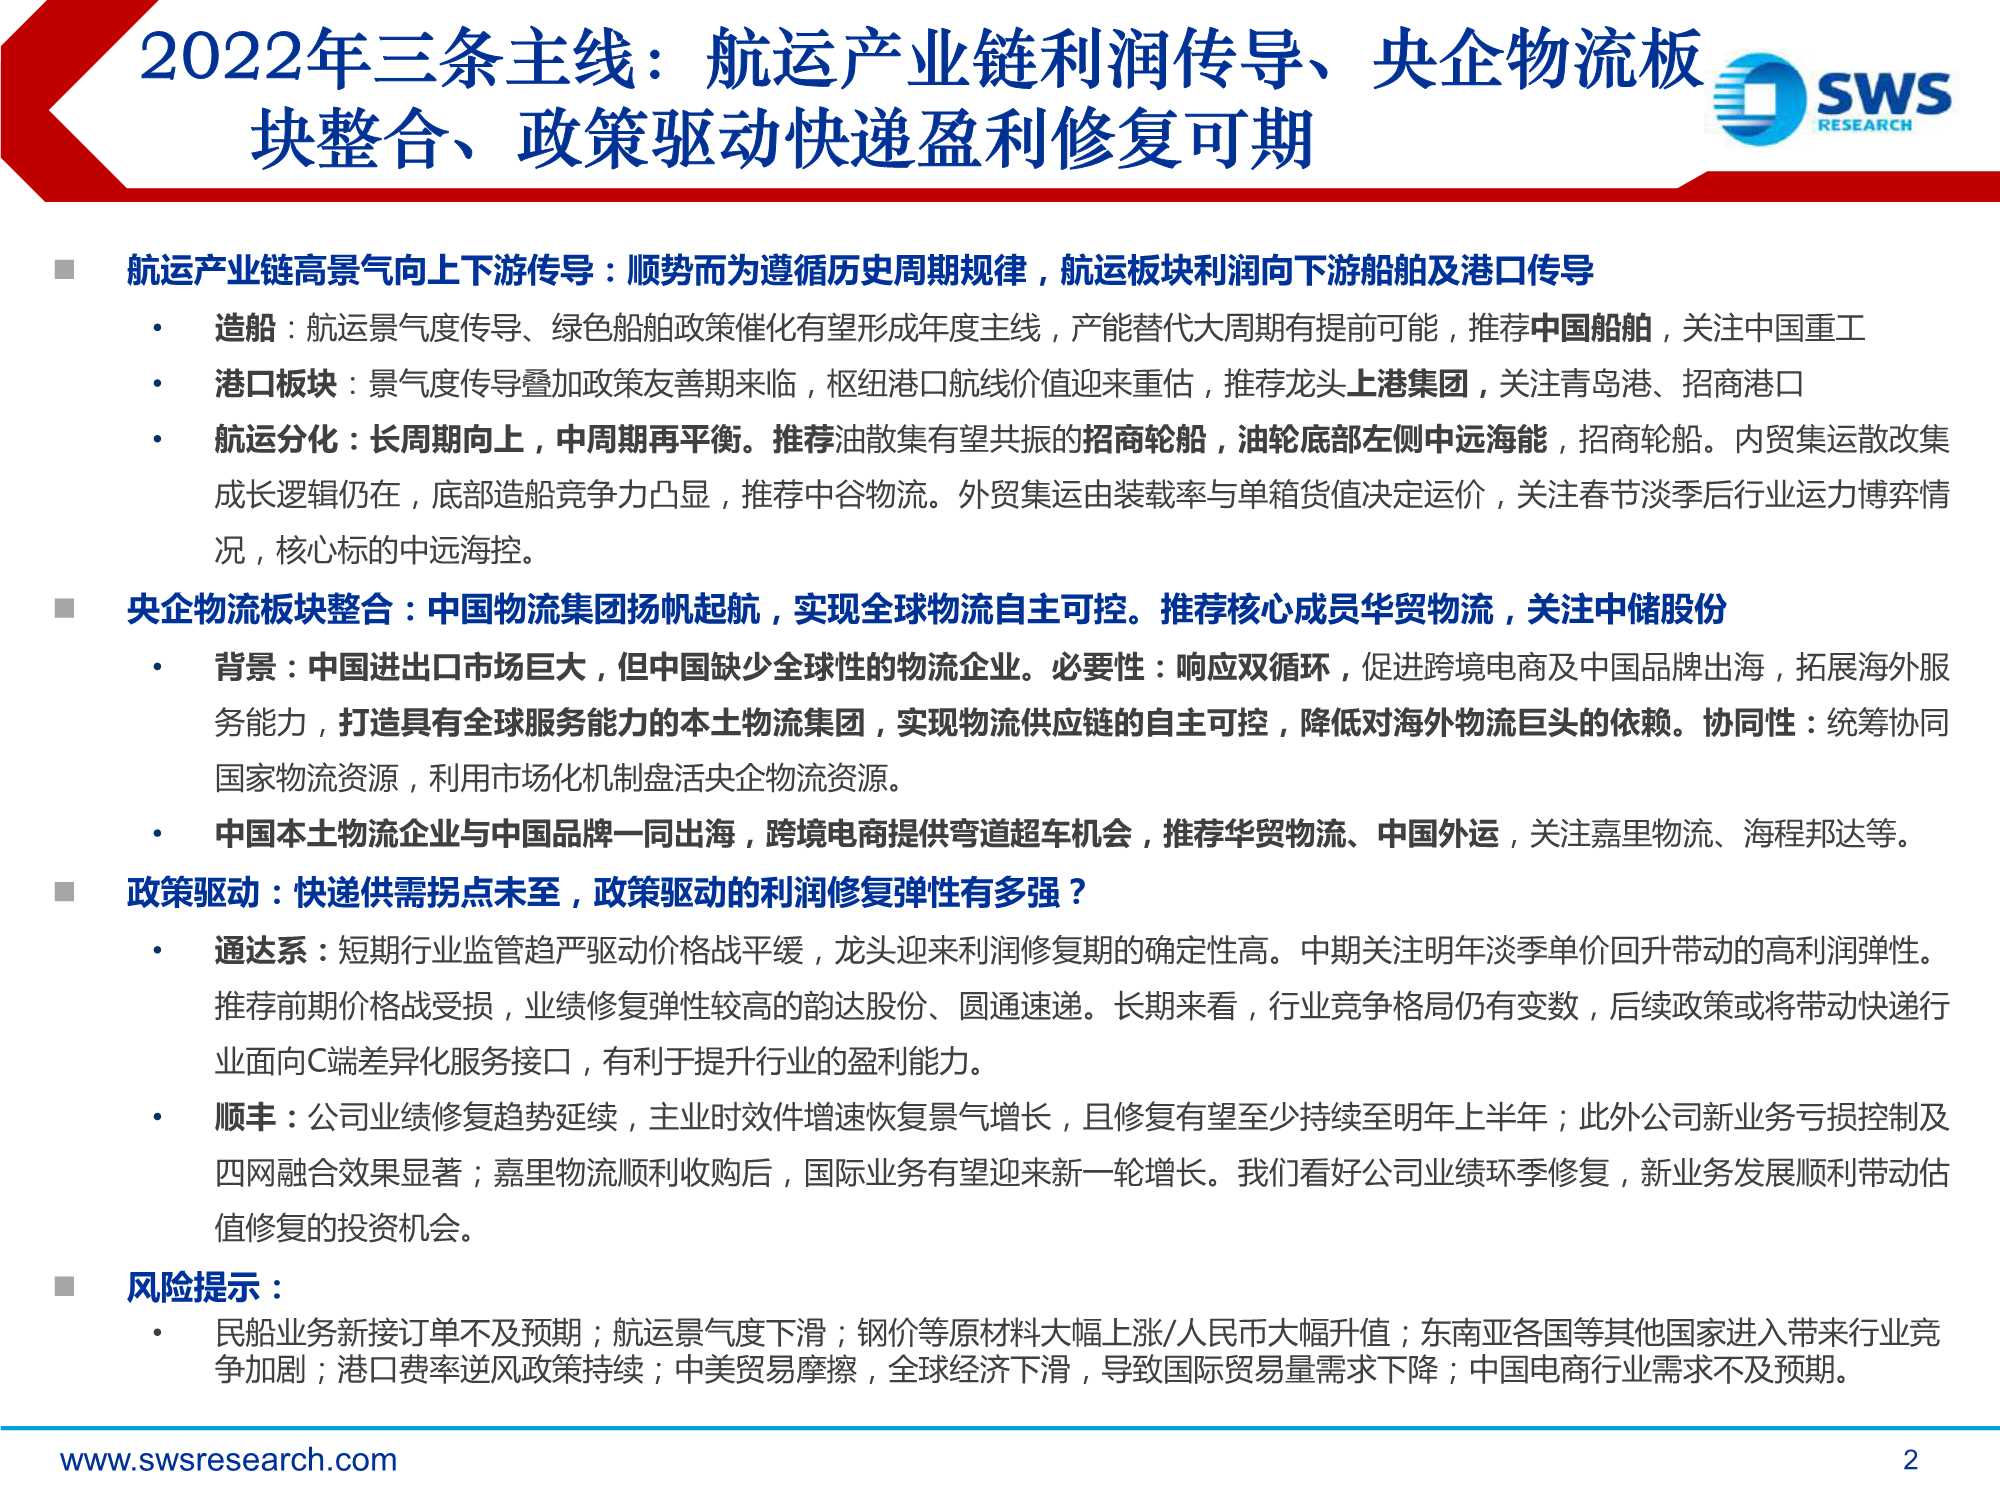 申万宏源-2022年跨境物流行业年度策略：中国物流集团扬帆起航，实现全球物流自主可控-20211215-25页